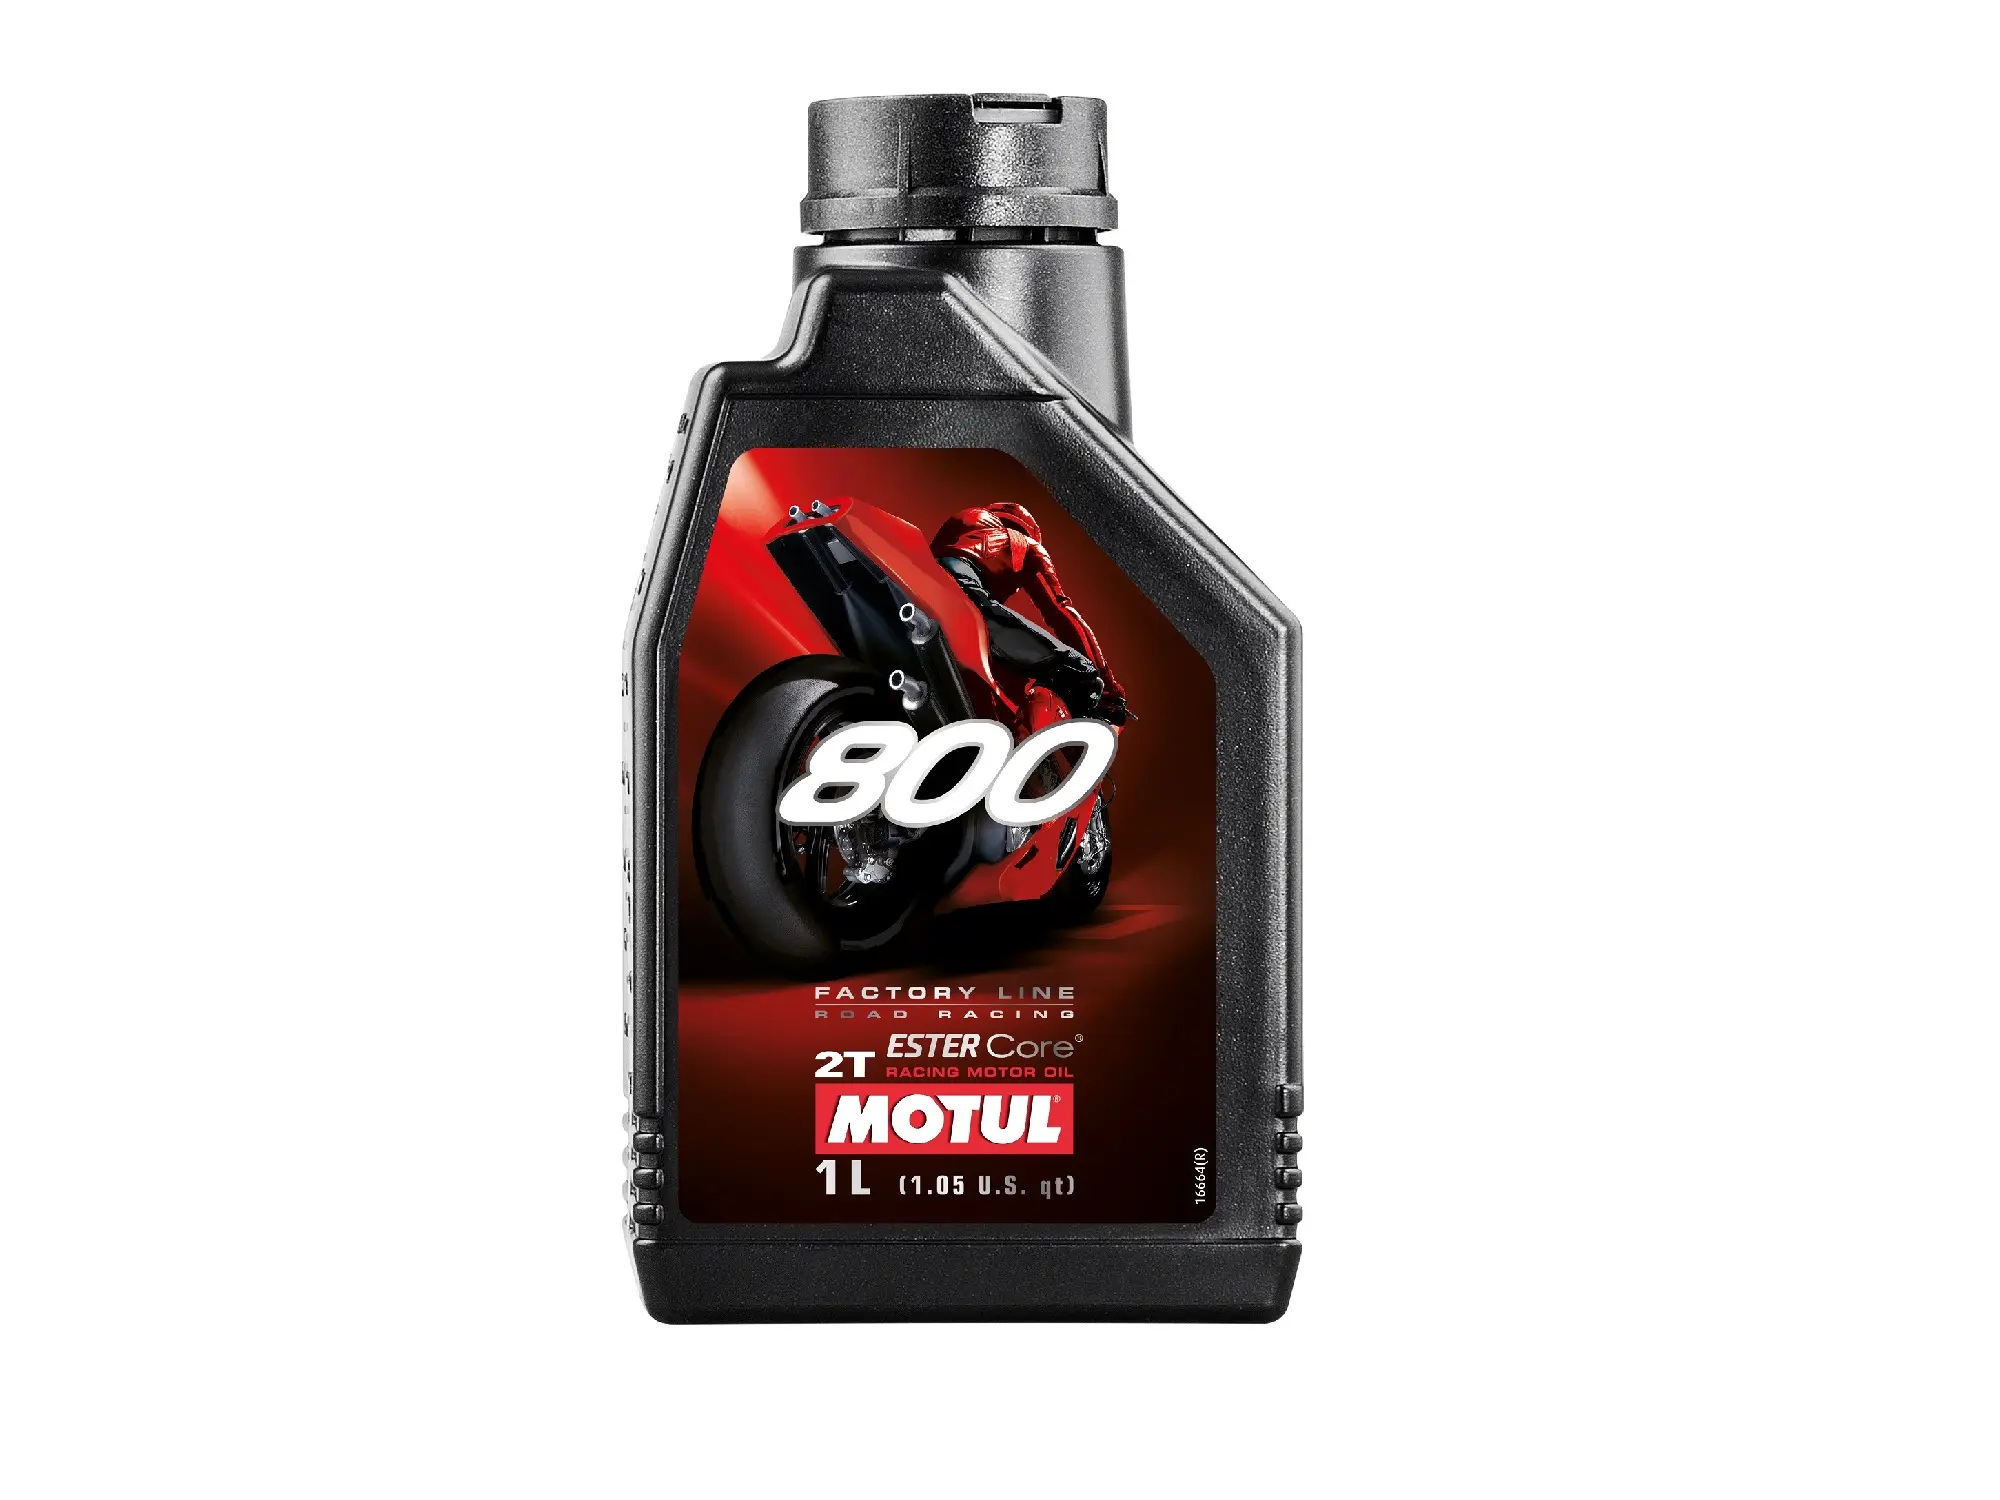 MOTUL - 800 Motoröl 2T -1 Liter - Road Racing, Art.-Nr.: 10016667 - Bild 1